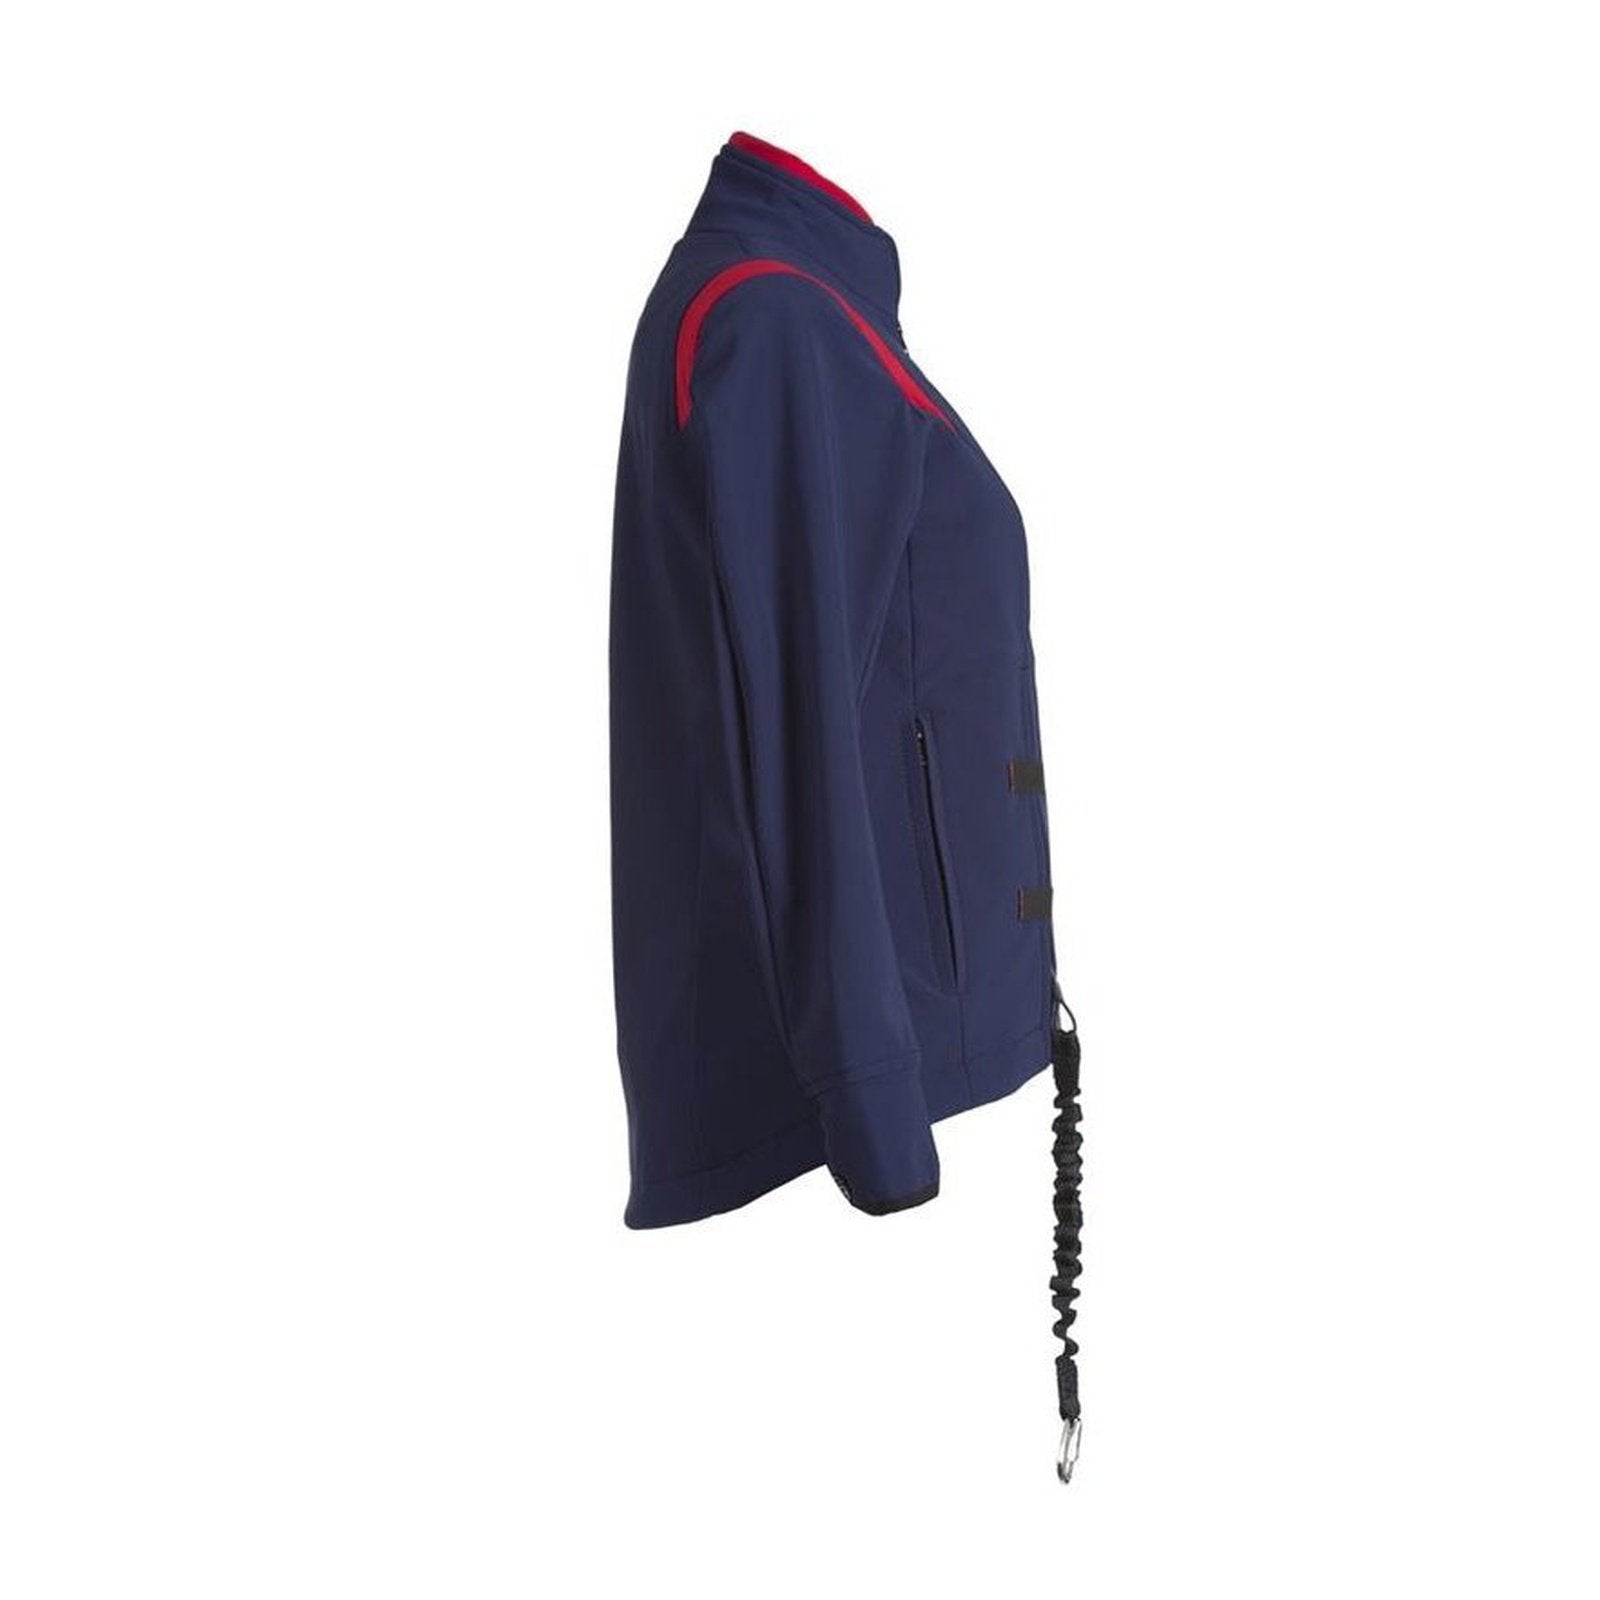 HELITE Airshell-Jacke ohne Airbag in 3 vers. Farben bei SP-Reitsport HELITE bei SP-Reitsport